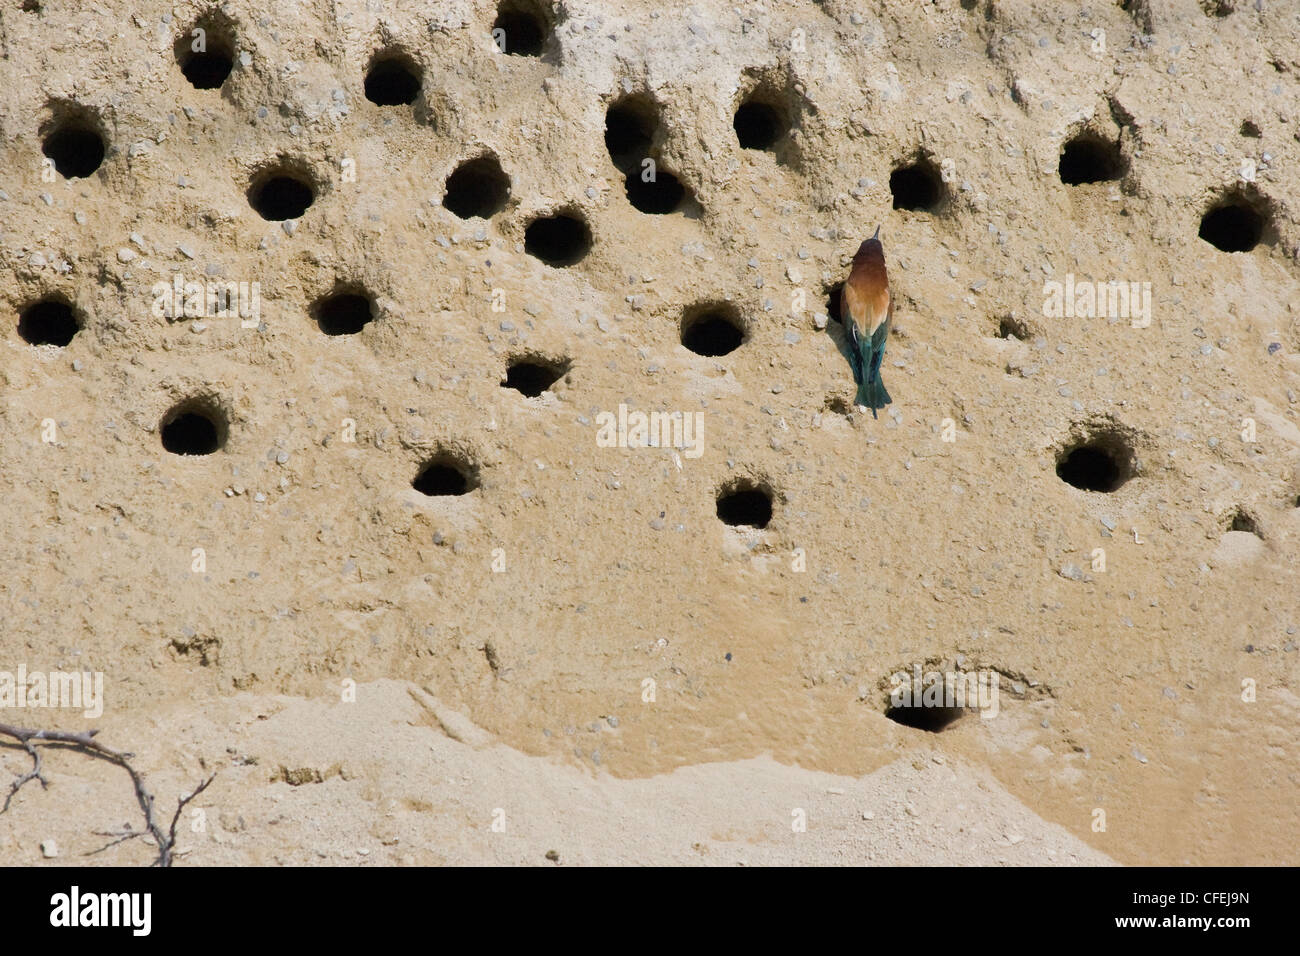 Bienenfresser-Kolonie mit Nester in Höhlen in die Seite eines sandigen Bank und Bienenfresser am Eingang eines Nestes getunnelt Stockfoto